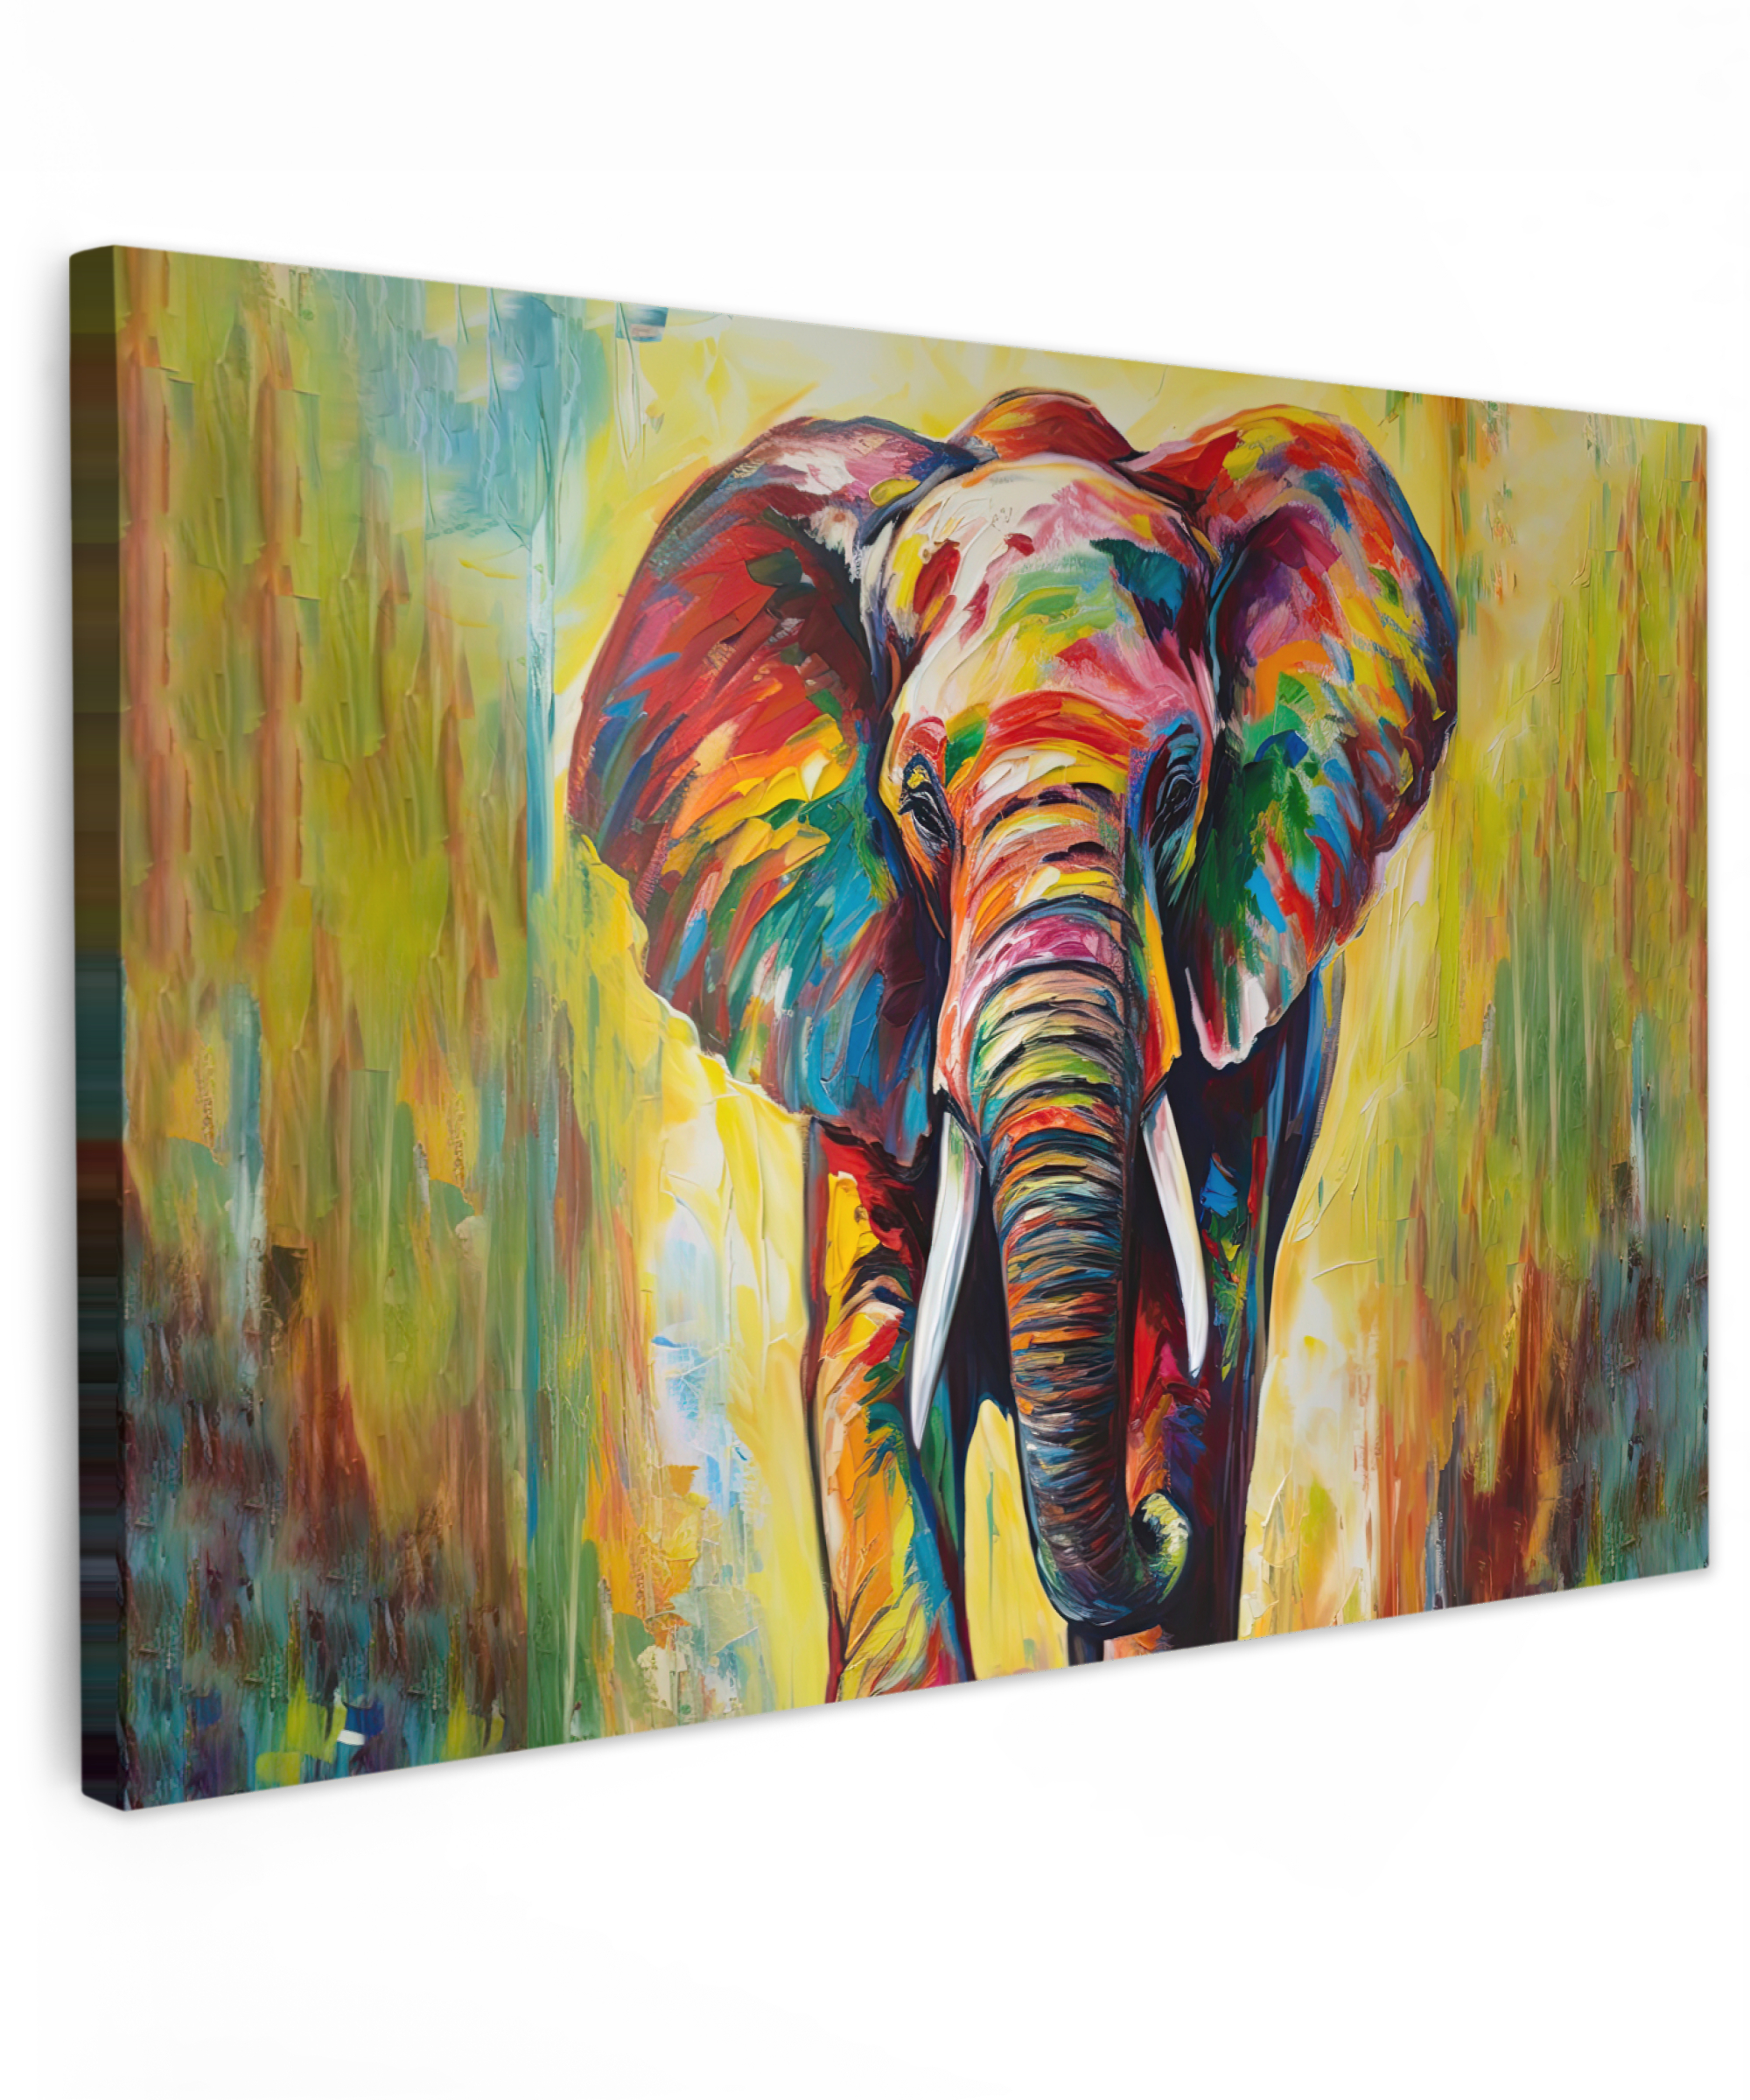 Leinwandbild - Elefant - Kunst - Gemälde - Tiere - Regenbogen